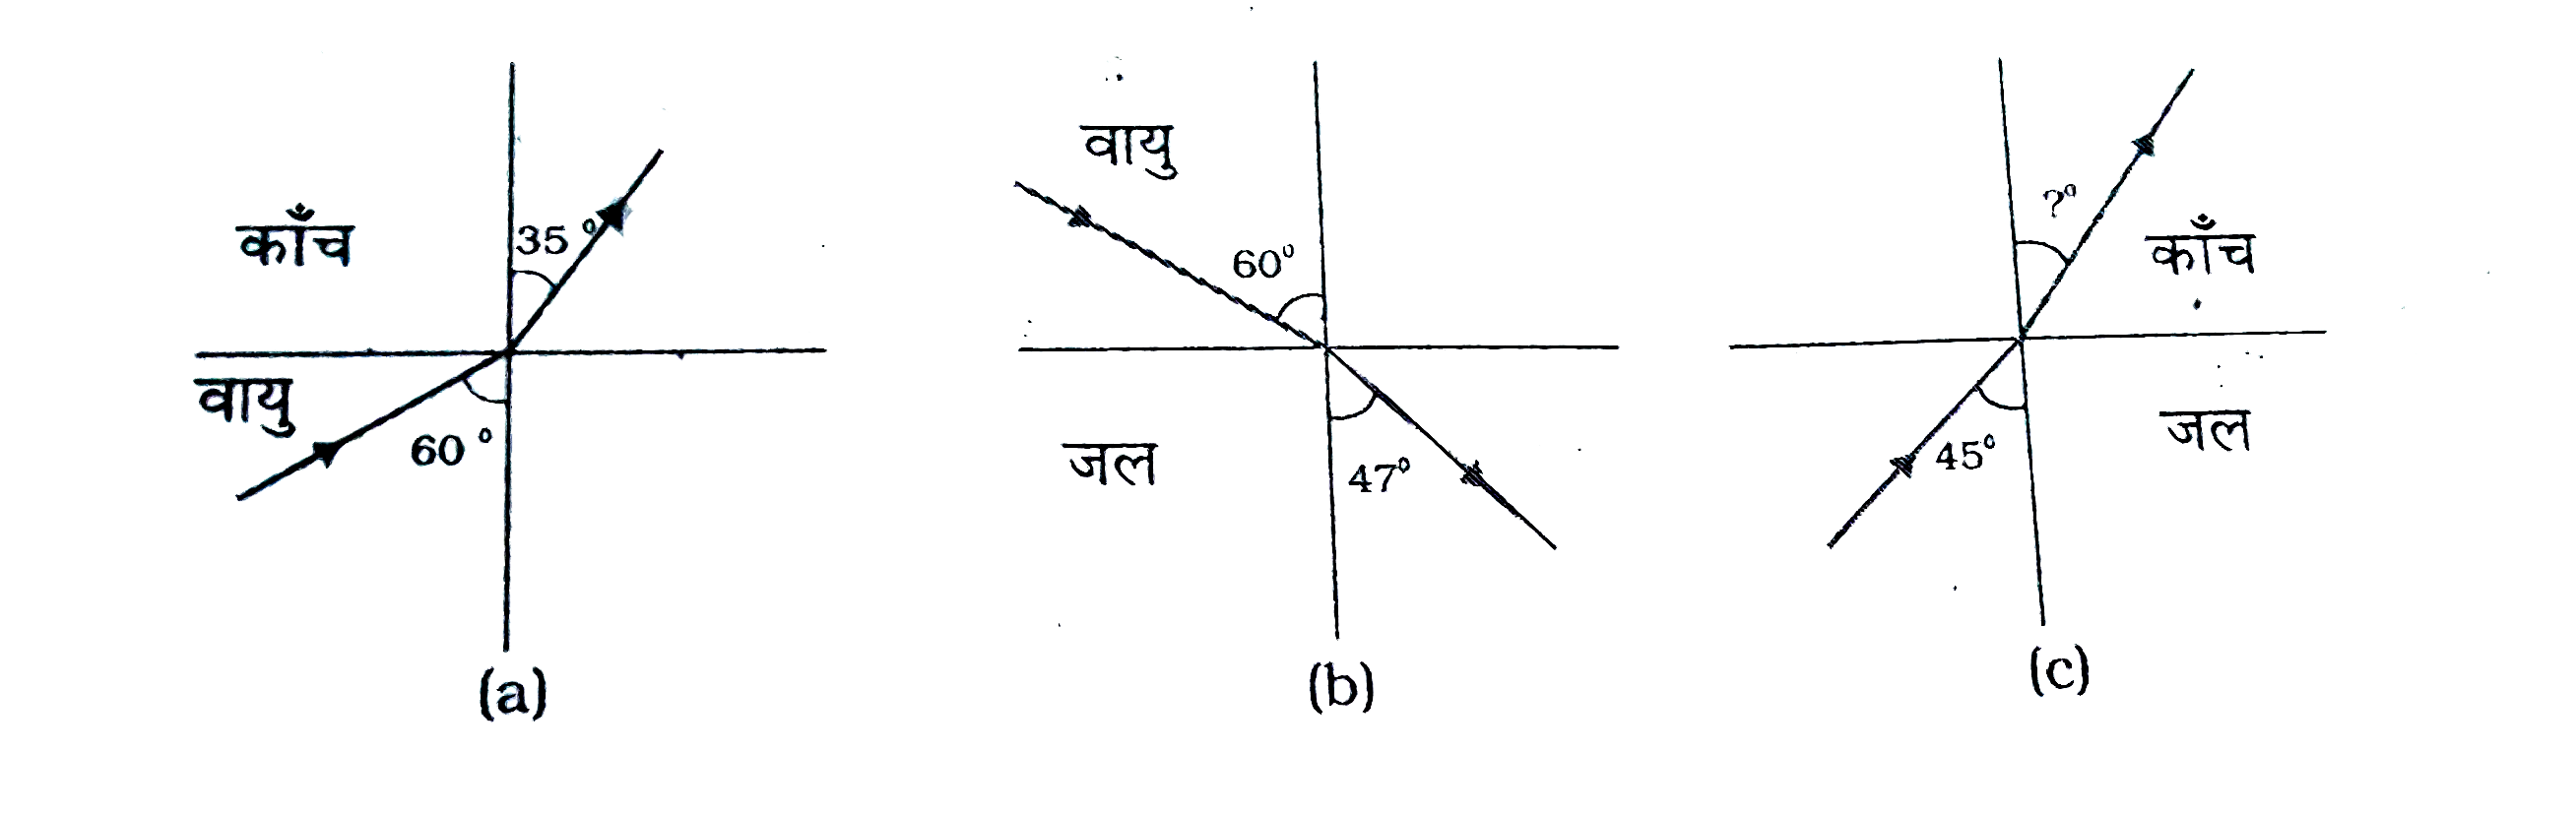 चित्र  (a)  तथा  (b) में किसी आपतित  किरण का अपवर्तन  दर्शाया गया  है  जो वायु  में  क्रमशः काँच - वायु  तथा जल-वायु  अंतरापृष्ठ के अभिलम्ब    60^(@)  से  का कोण  बनाती   है | उस  आपतित  कोण ज्ञात  कीजिए,  जो जल-काँच अंतरापृष्ठ के अभिलम्ब  से 45^(@)  का कोण  बनाती  है [  चित्र (c)] |